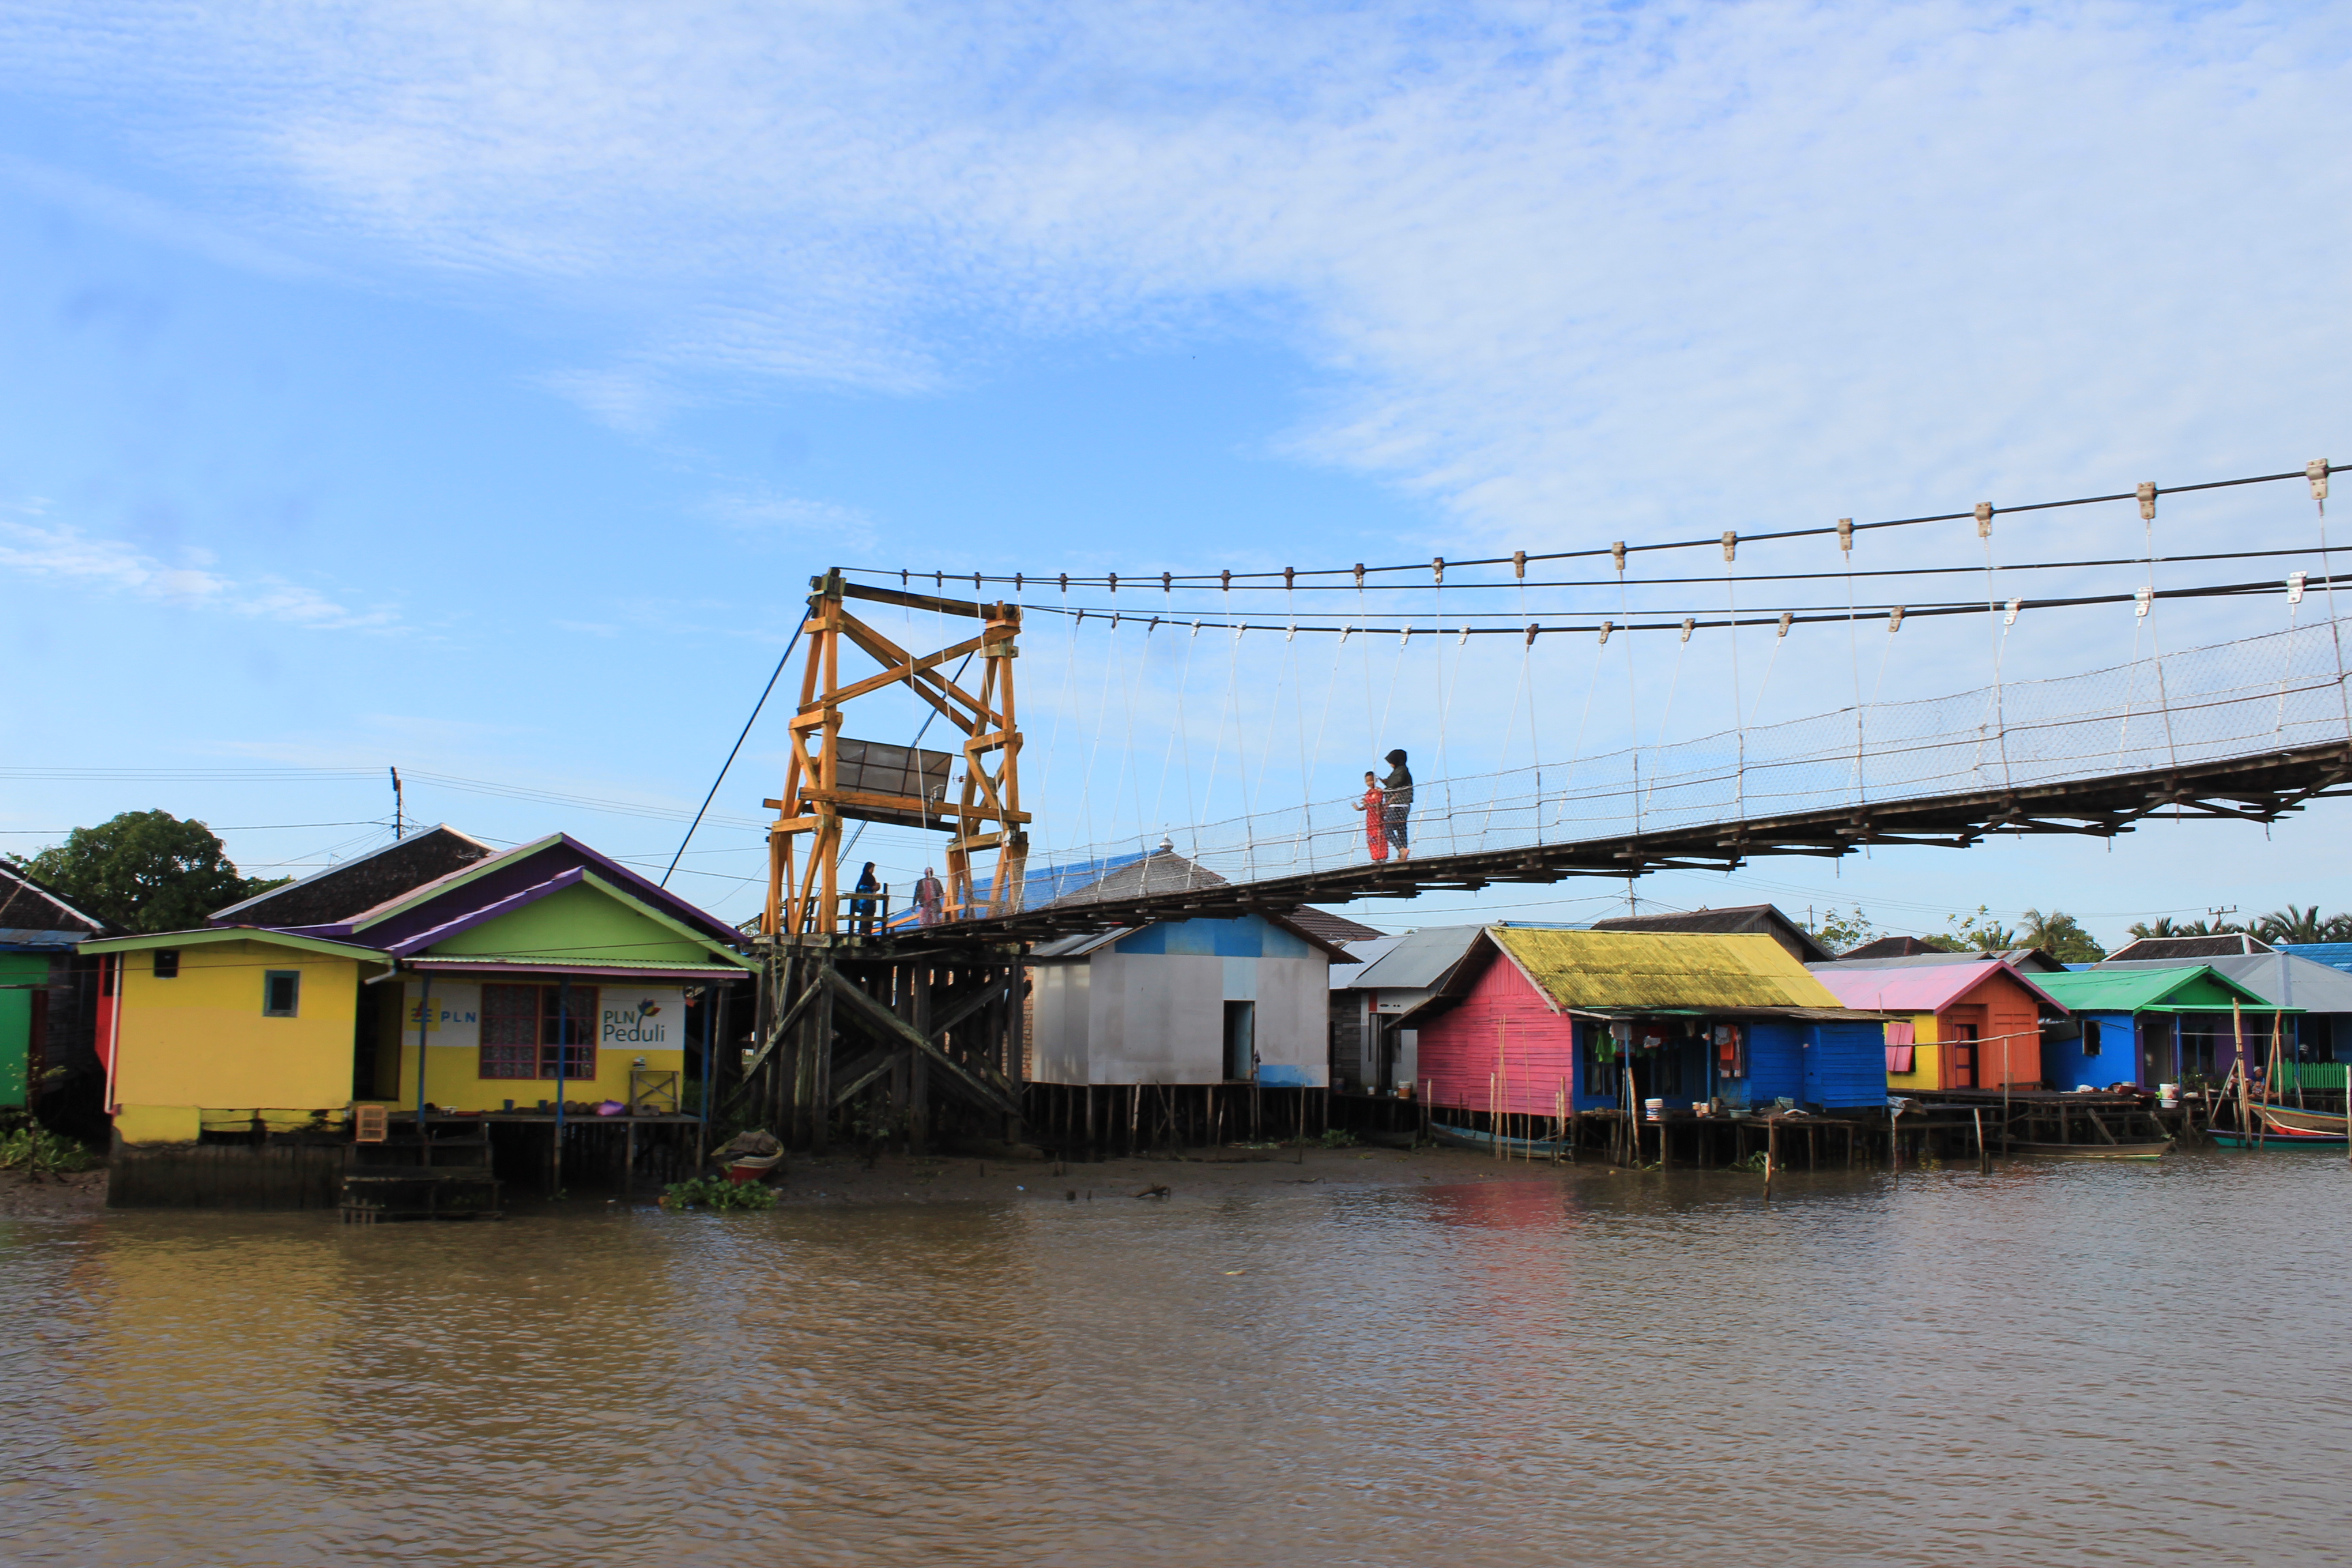 Bonus gambar sebuah jembatan gantung yang melintas di atas air sungai yang dilewati menuju lokasi Pasar Terapung | Foto: Vita Ayu Anggraeni / GNFI